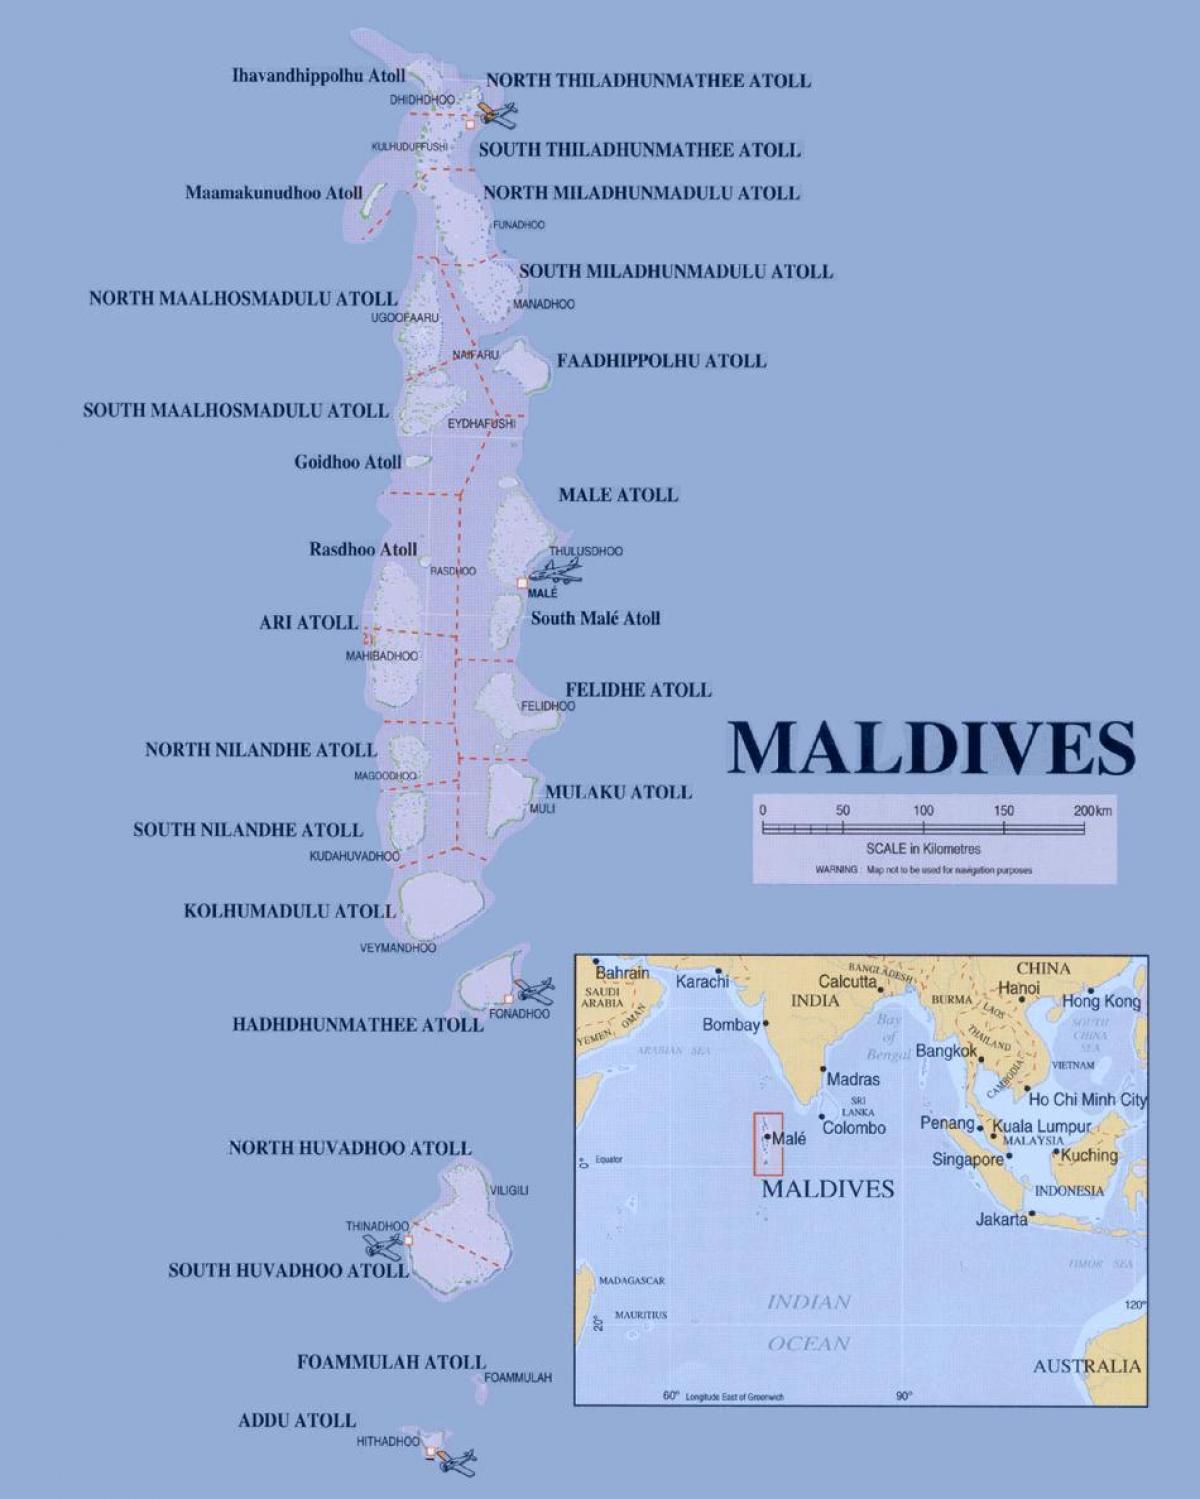 نقشہ دکھا مالدیپ